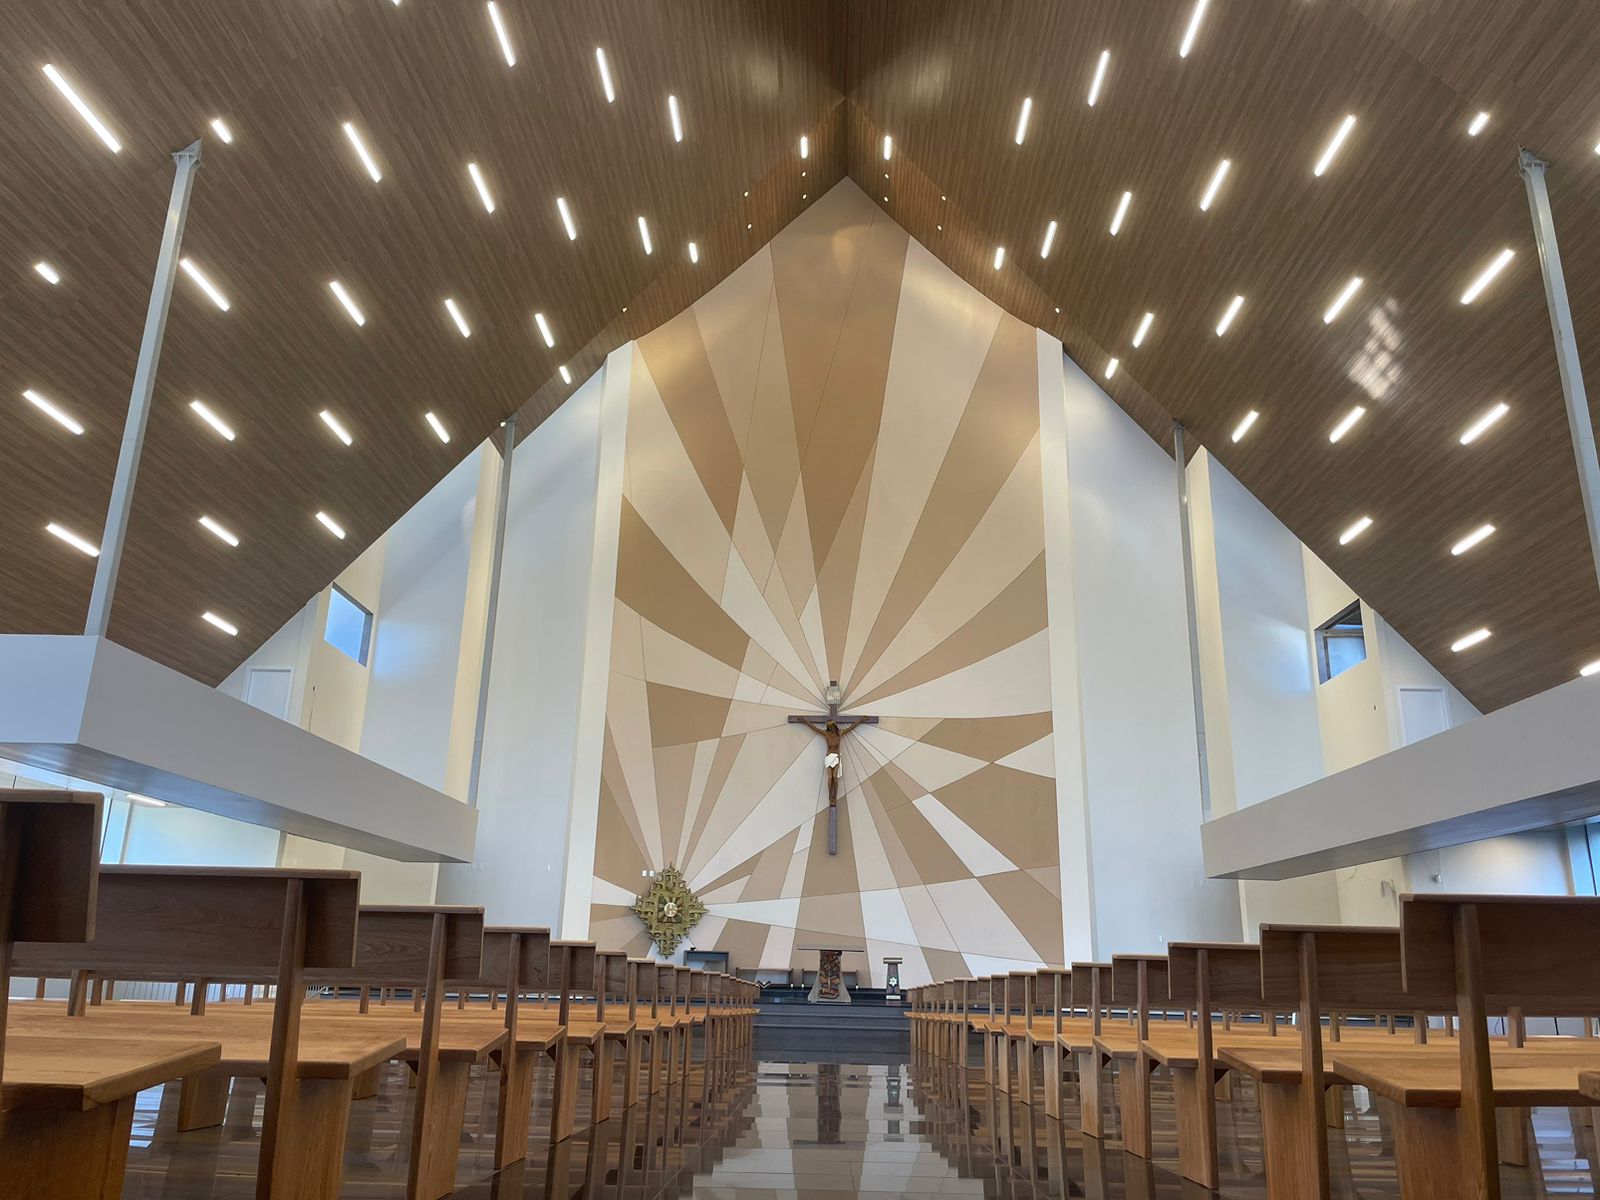 Paróquia Nossa Senhora de Fátima, Bairro Cancelli, será reinaugurada no dia 13 de maio